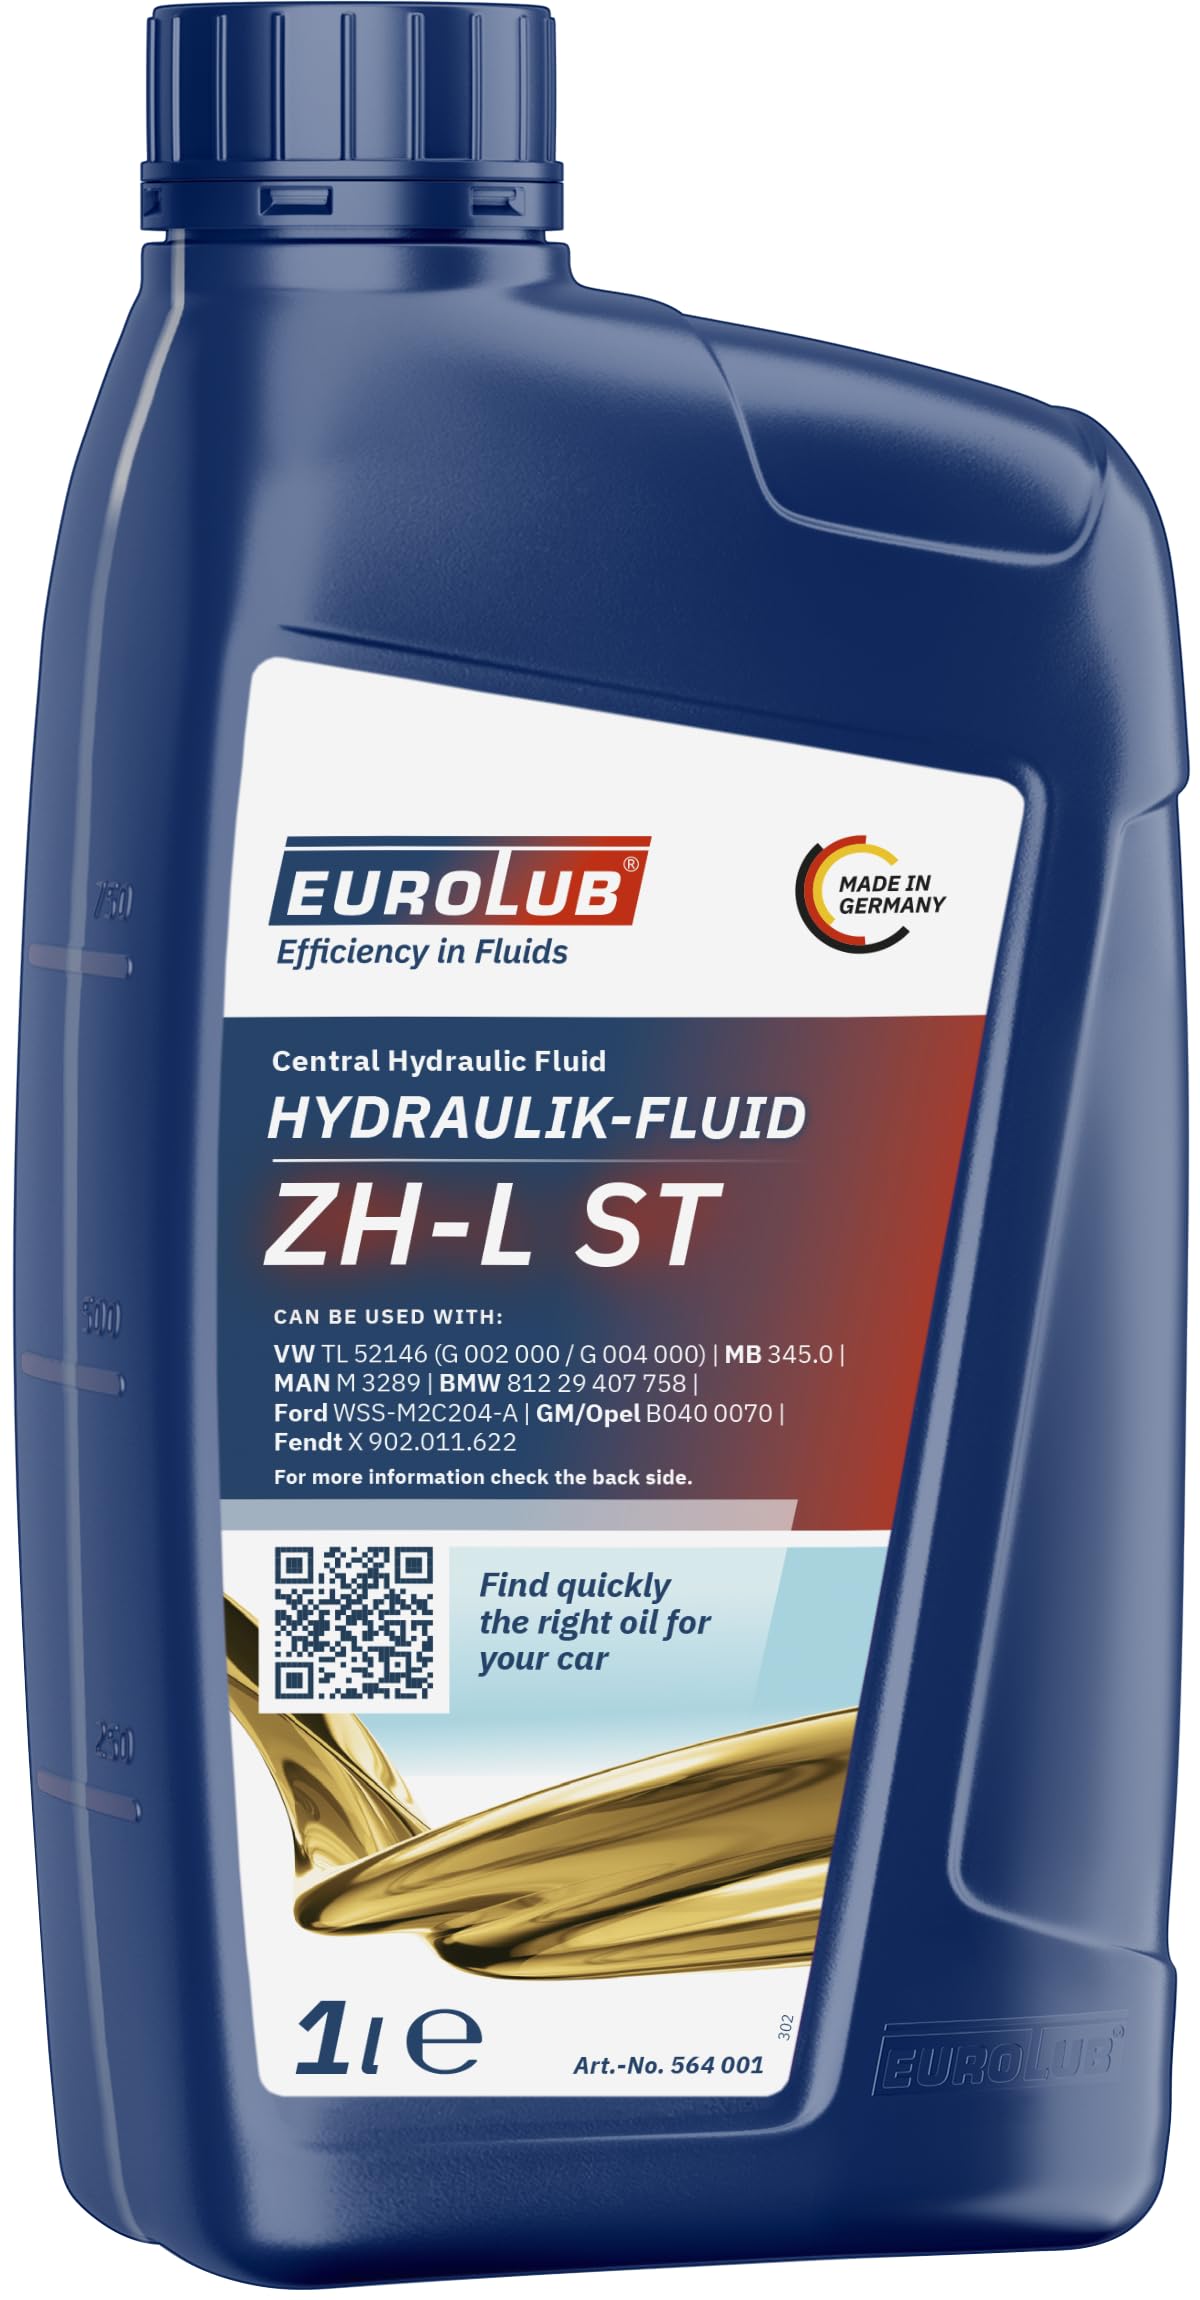 EUROLUB ZH-L ST HYDRAULIK-FLUID, 1 Liter von EUROLUB